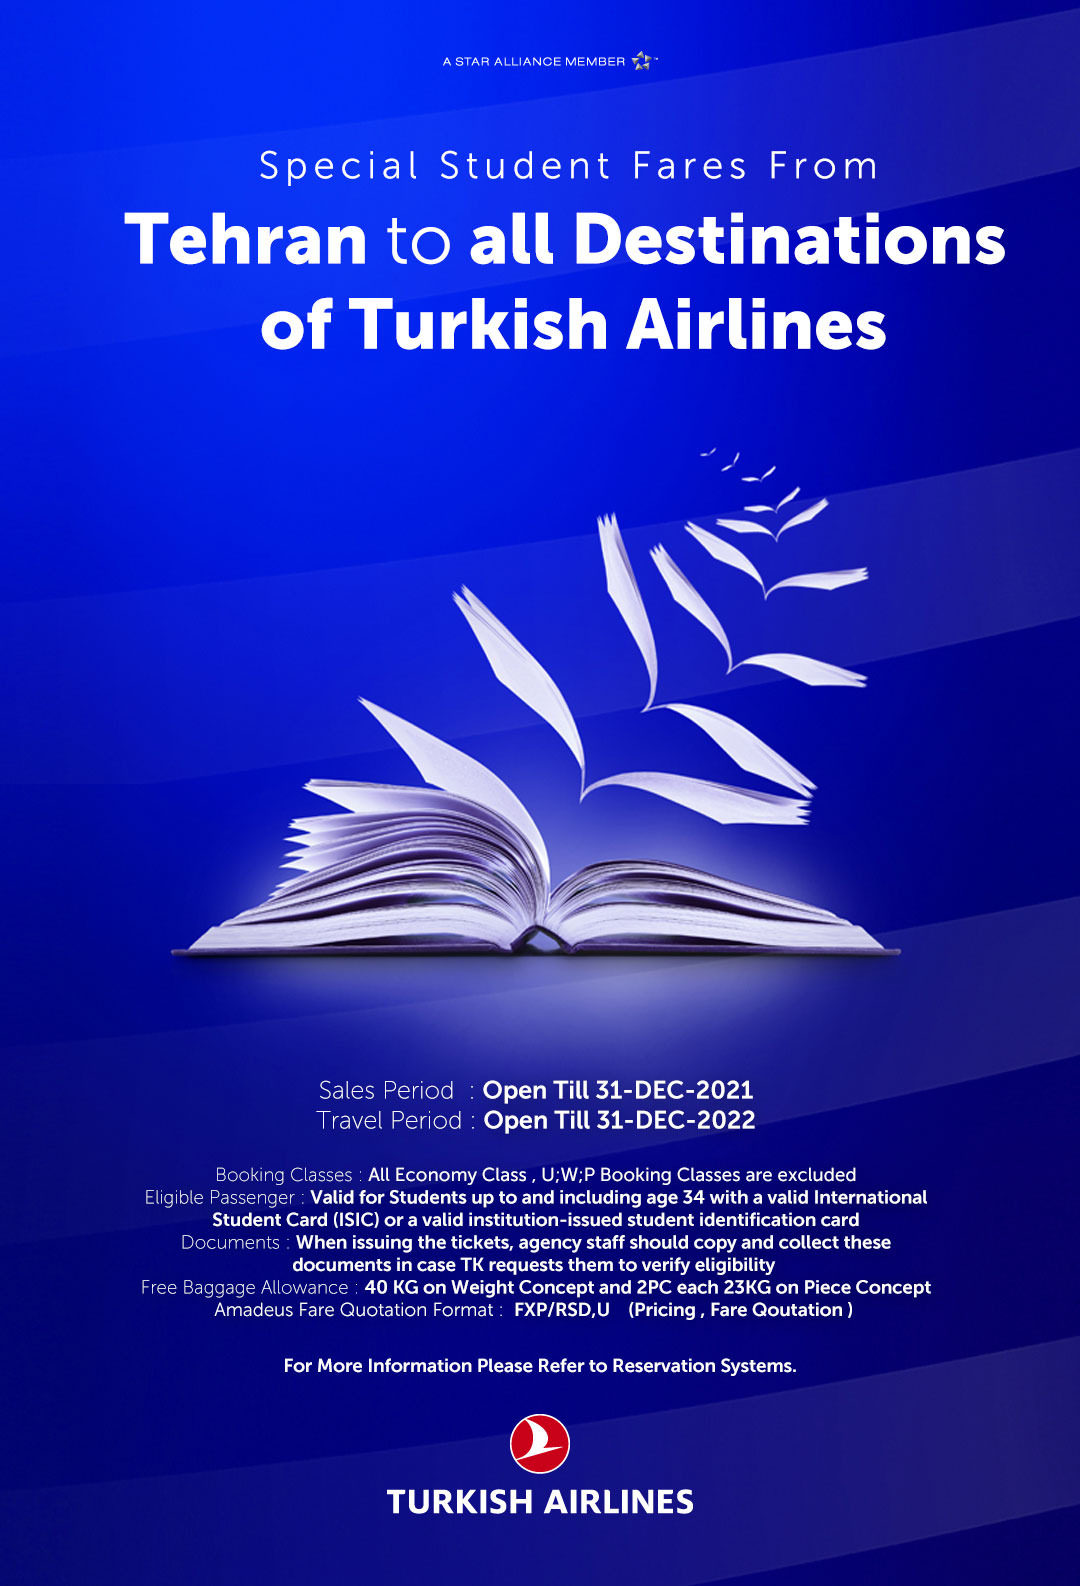 بخشنامه و اطلاعیه   هواپیمایی ترکیش درباره نرخ ویژه دانشجویی از تهران به تمام مقاصد 